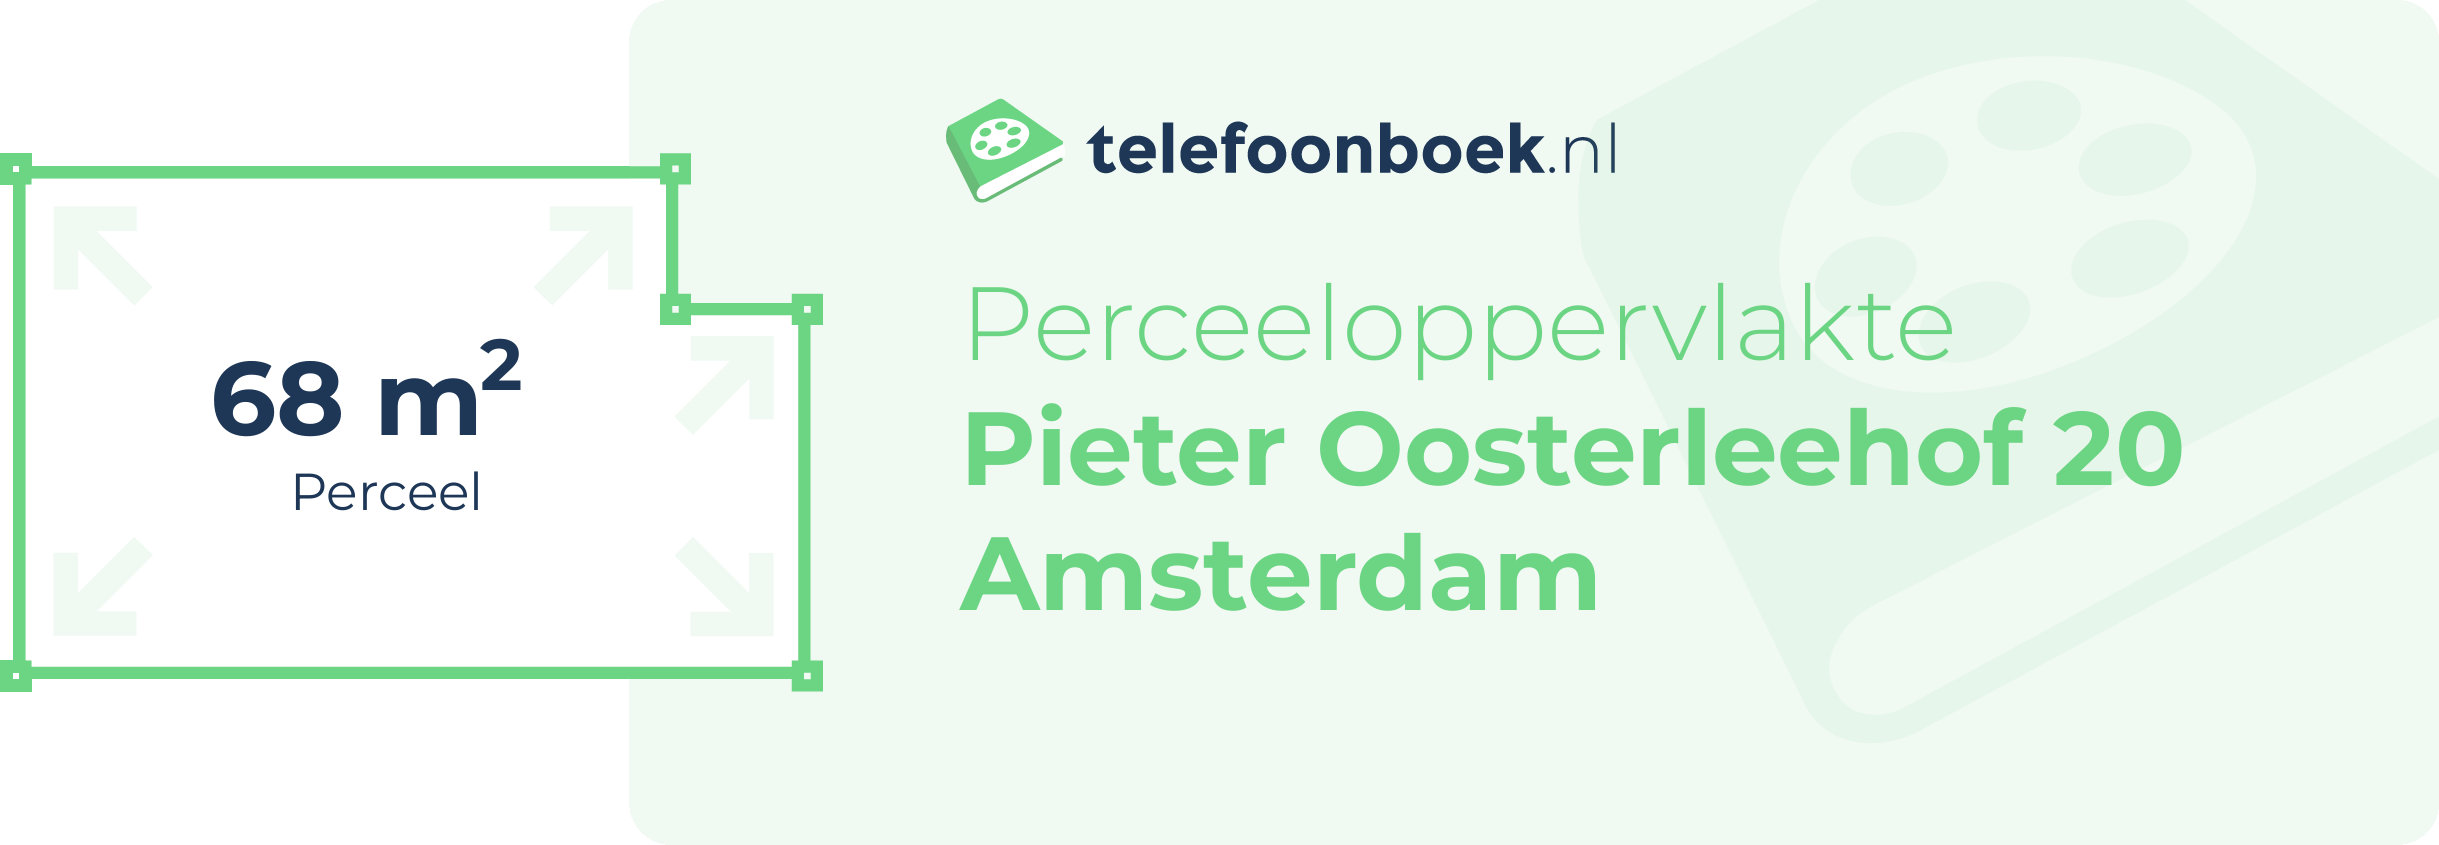 Perceeloppervlakte Pieter Oosterleehof 20 Amsterdam